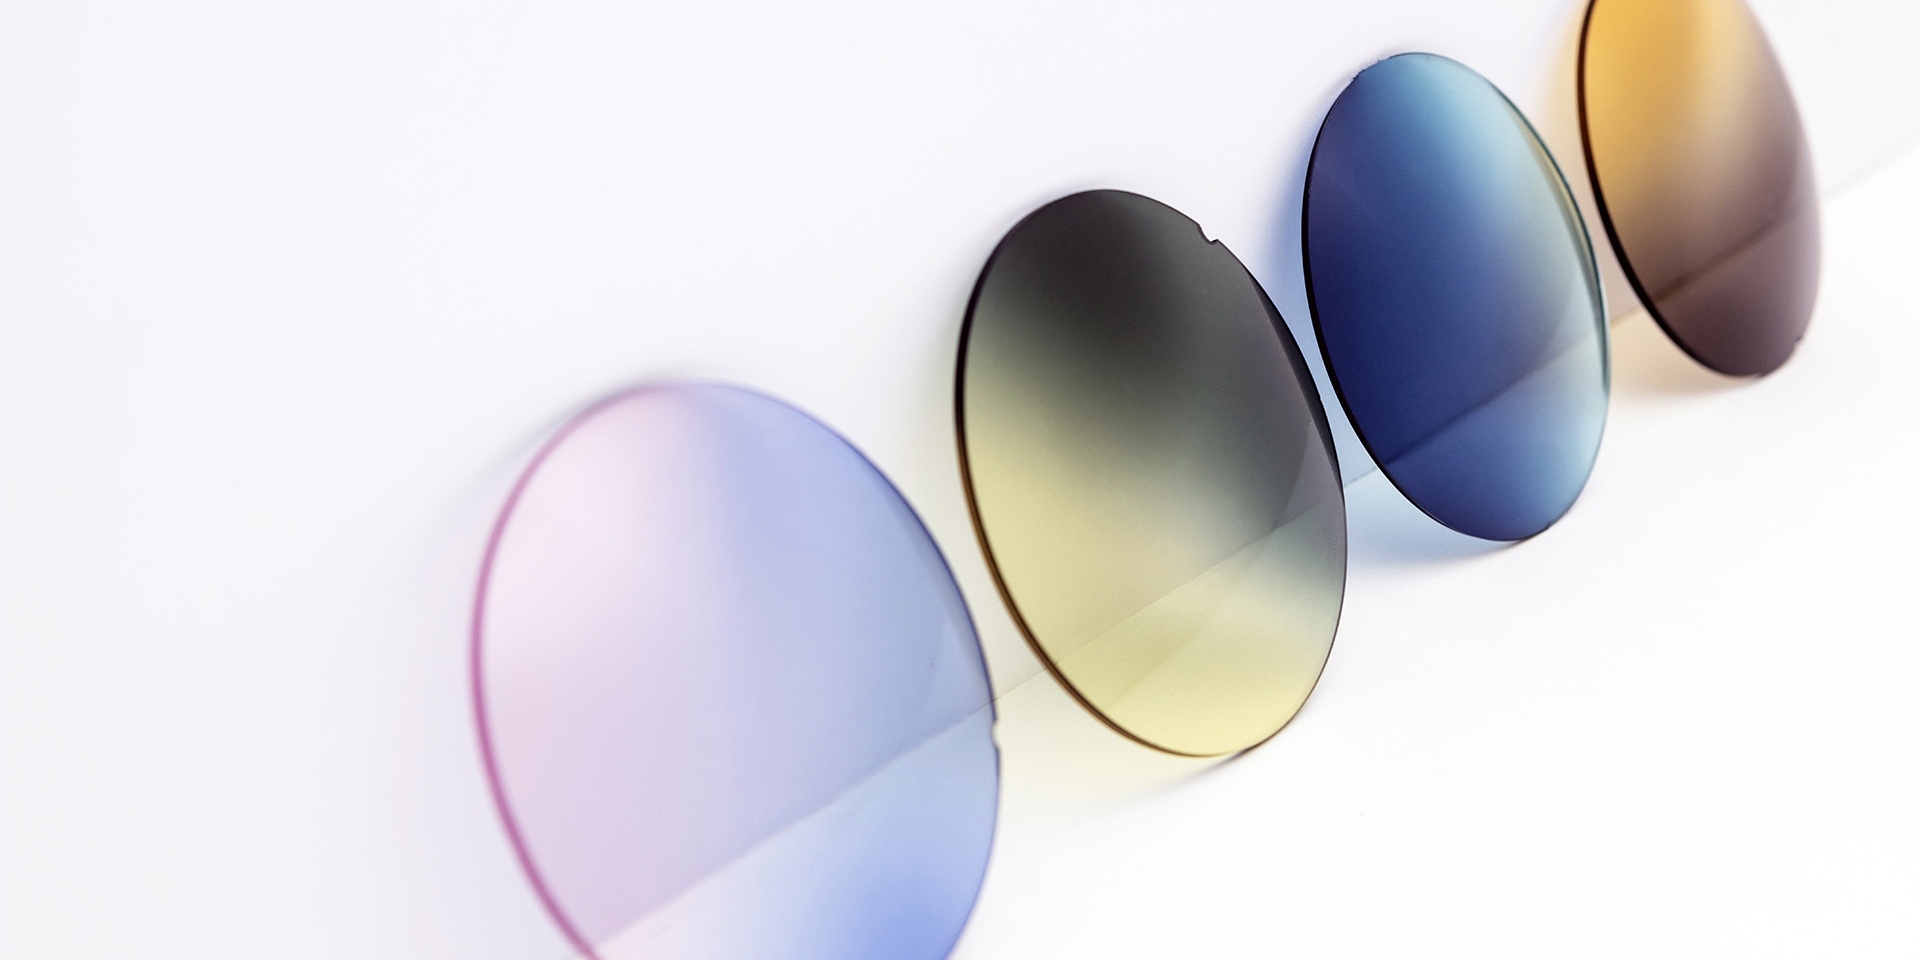 Des verres de lunettes de soleil de différentes couleurs appuyés contre une surface blanche : des dégradés rose-violet, jaune-gris, bleu et marron.